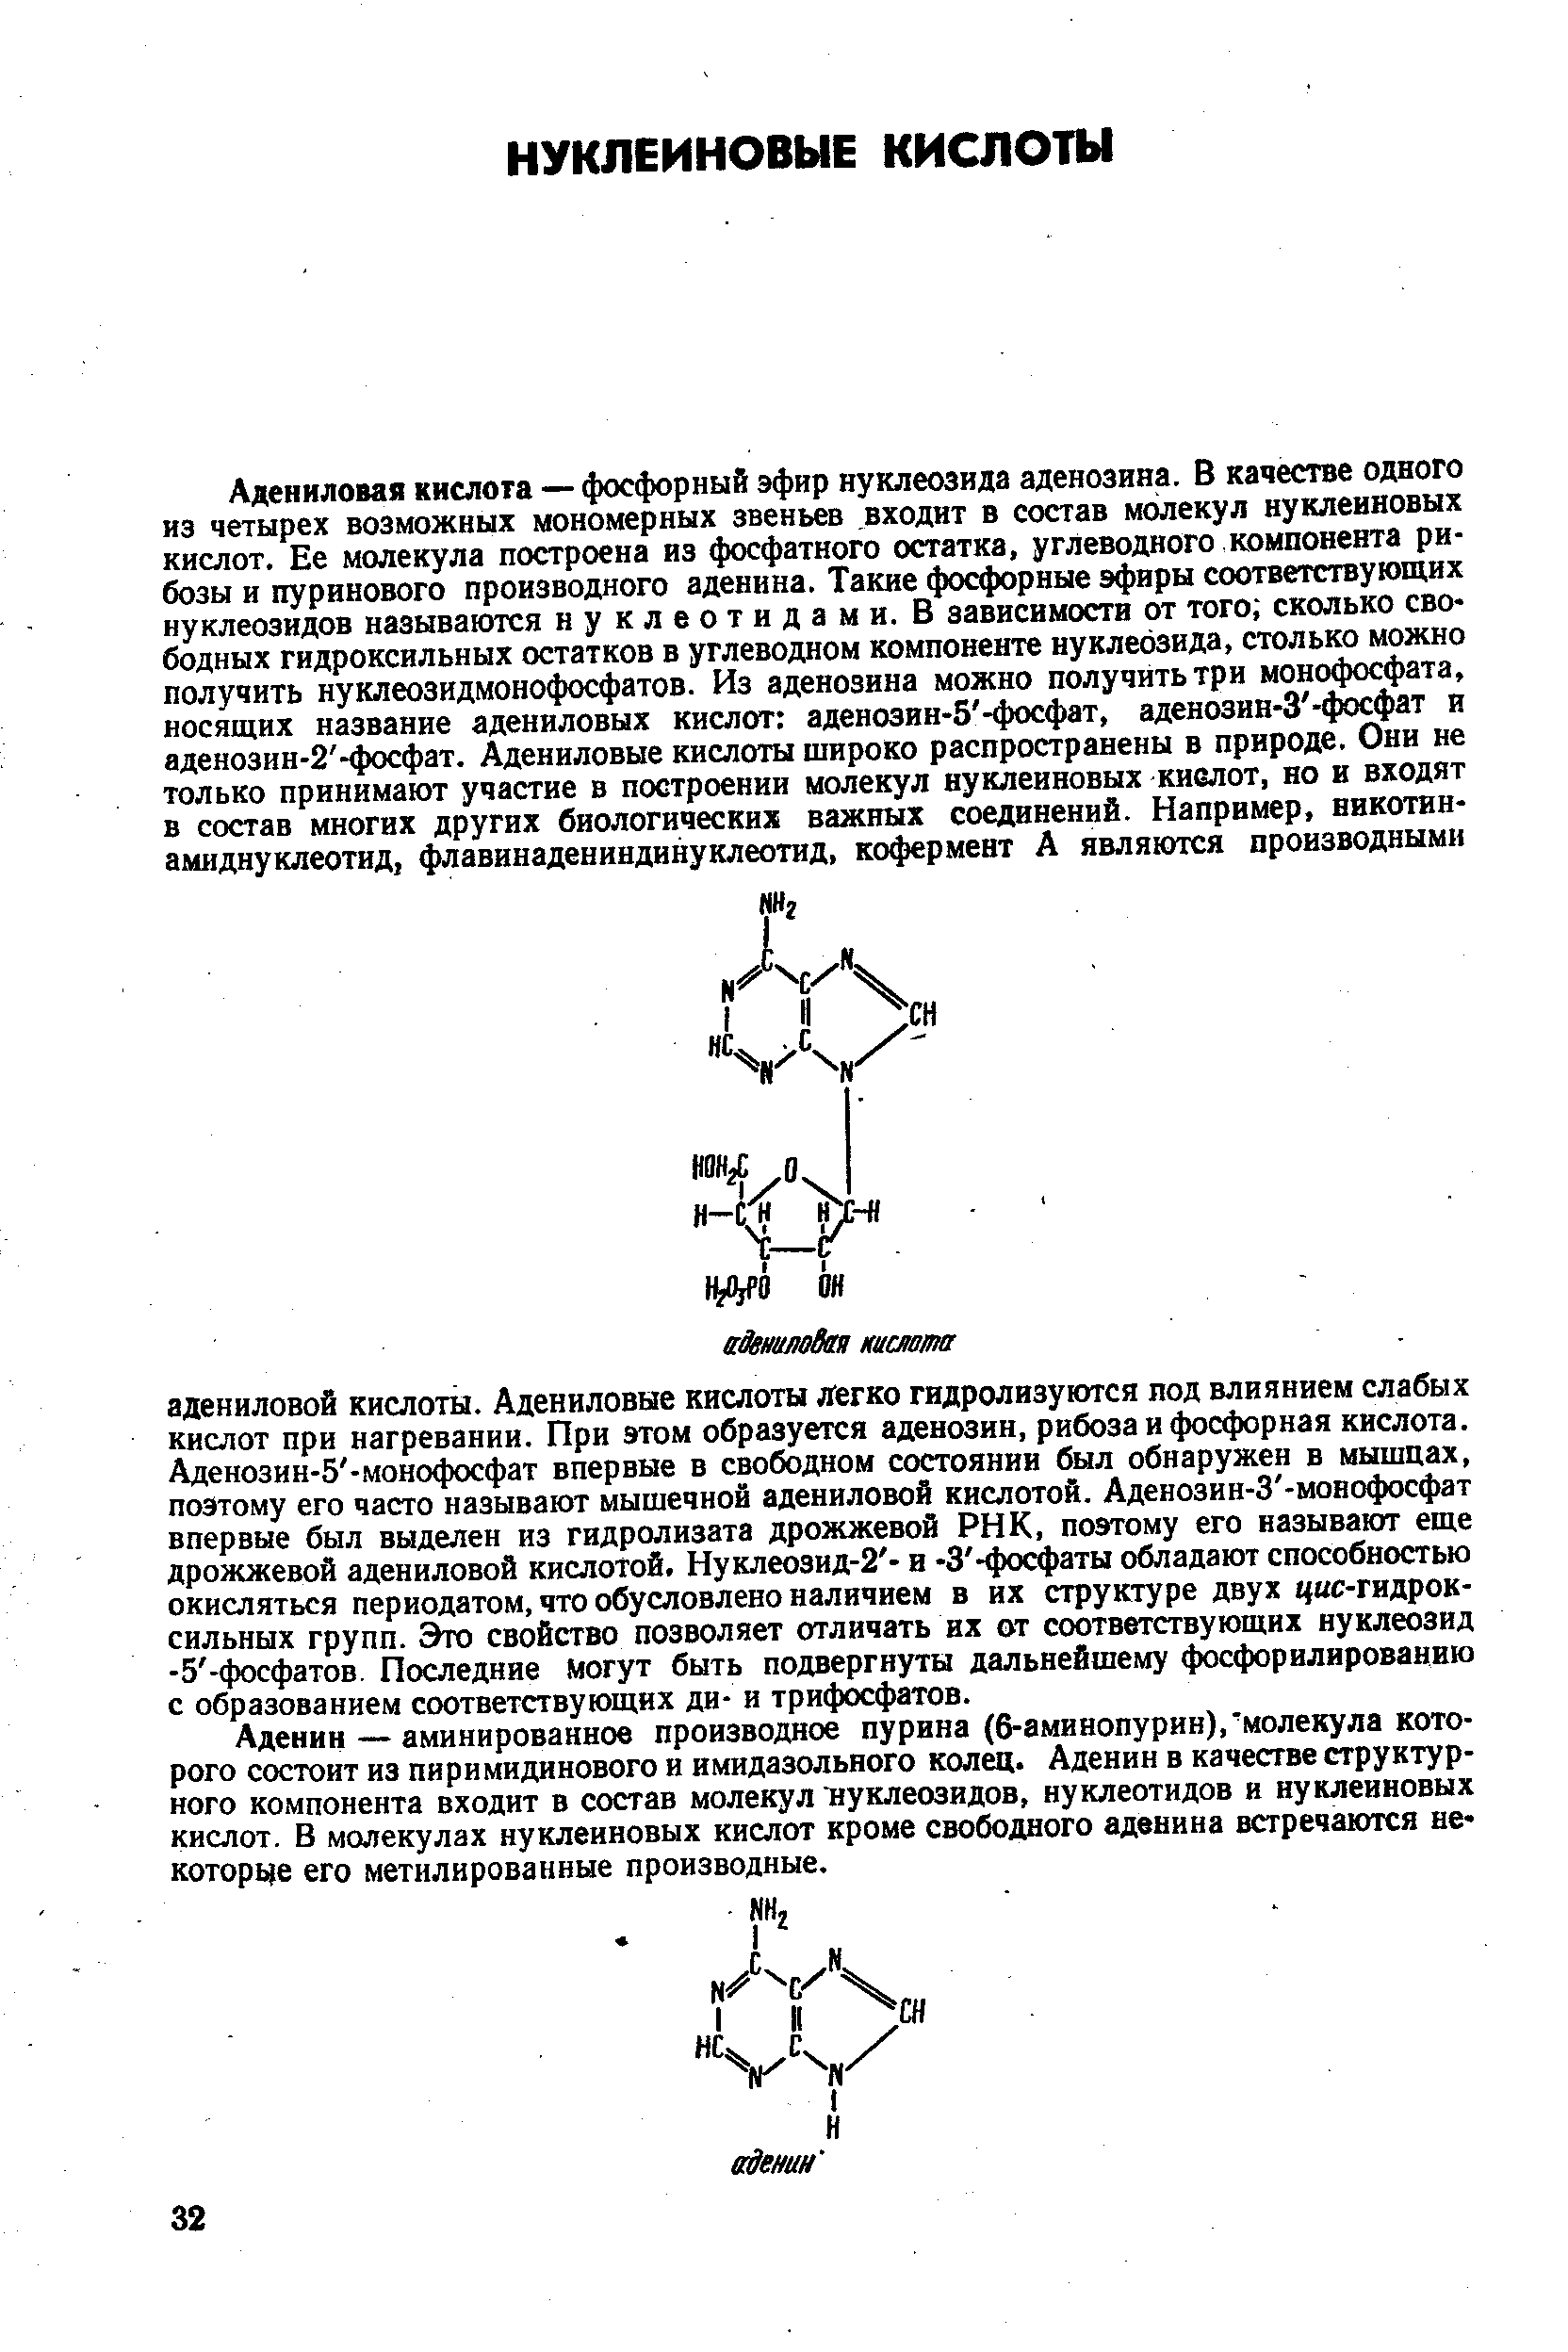 Аденин—аминированнов производное пурина (6-аминопурин), молекула которого состоит из пиримидинового и имидазольного колец. Аденин в качестве структурного компонента входит в состав молекул нуклеозидов, нуклеотидов и нуклеиновых кислот. В молекулах нуклеиновых кислот кроме свободного аденина встречаются некоторые его метилированные производные.